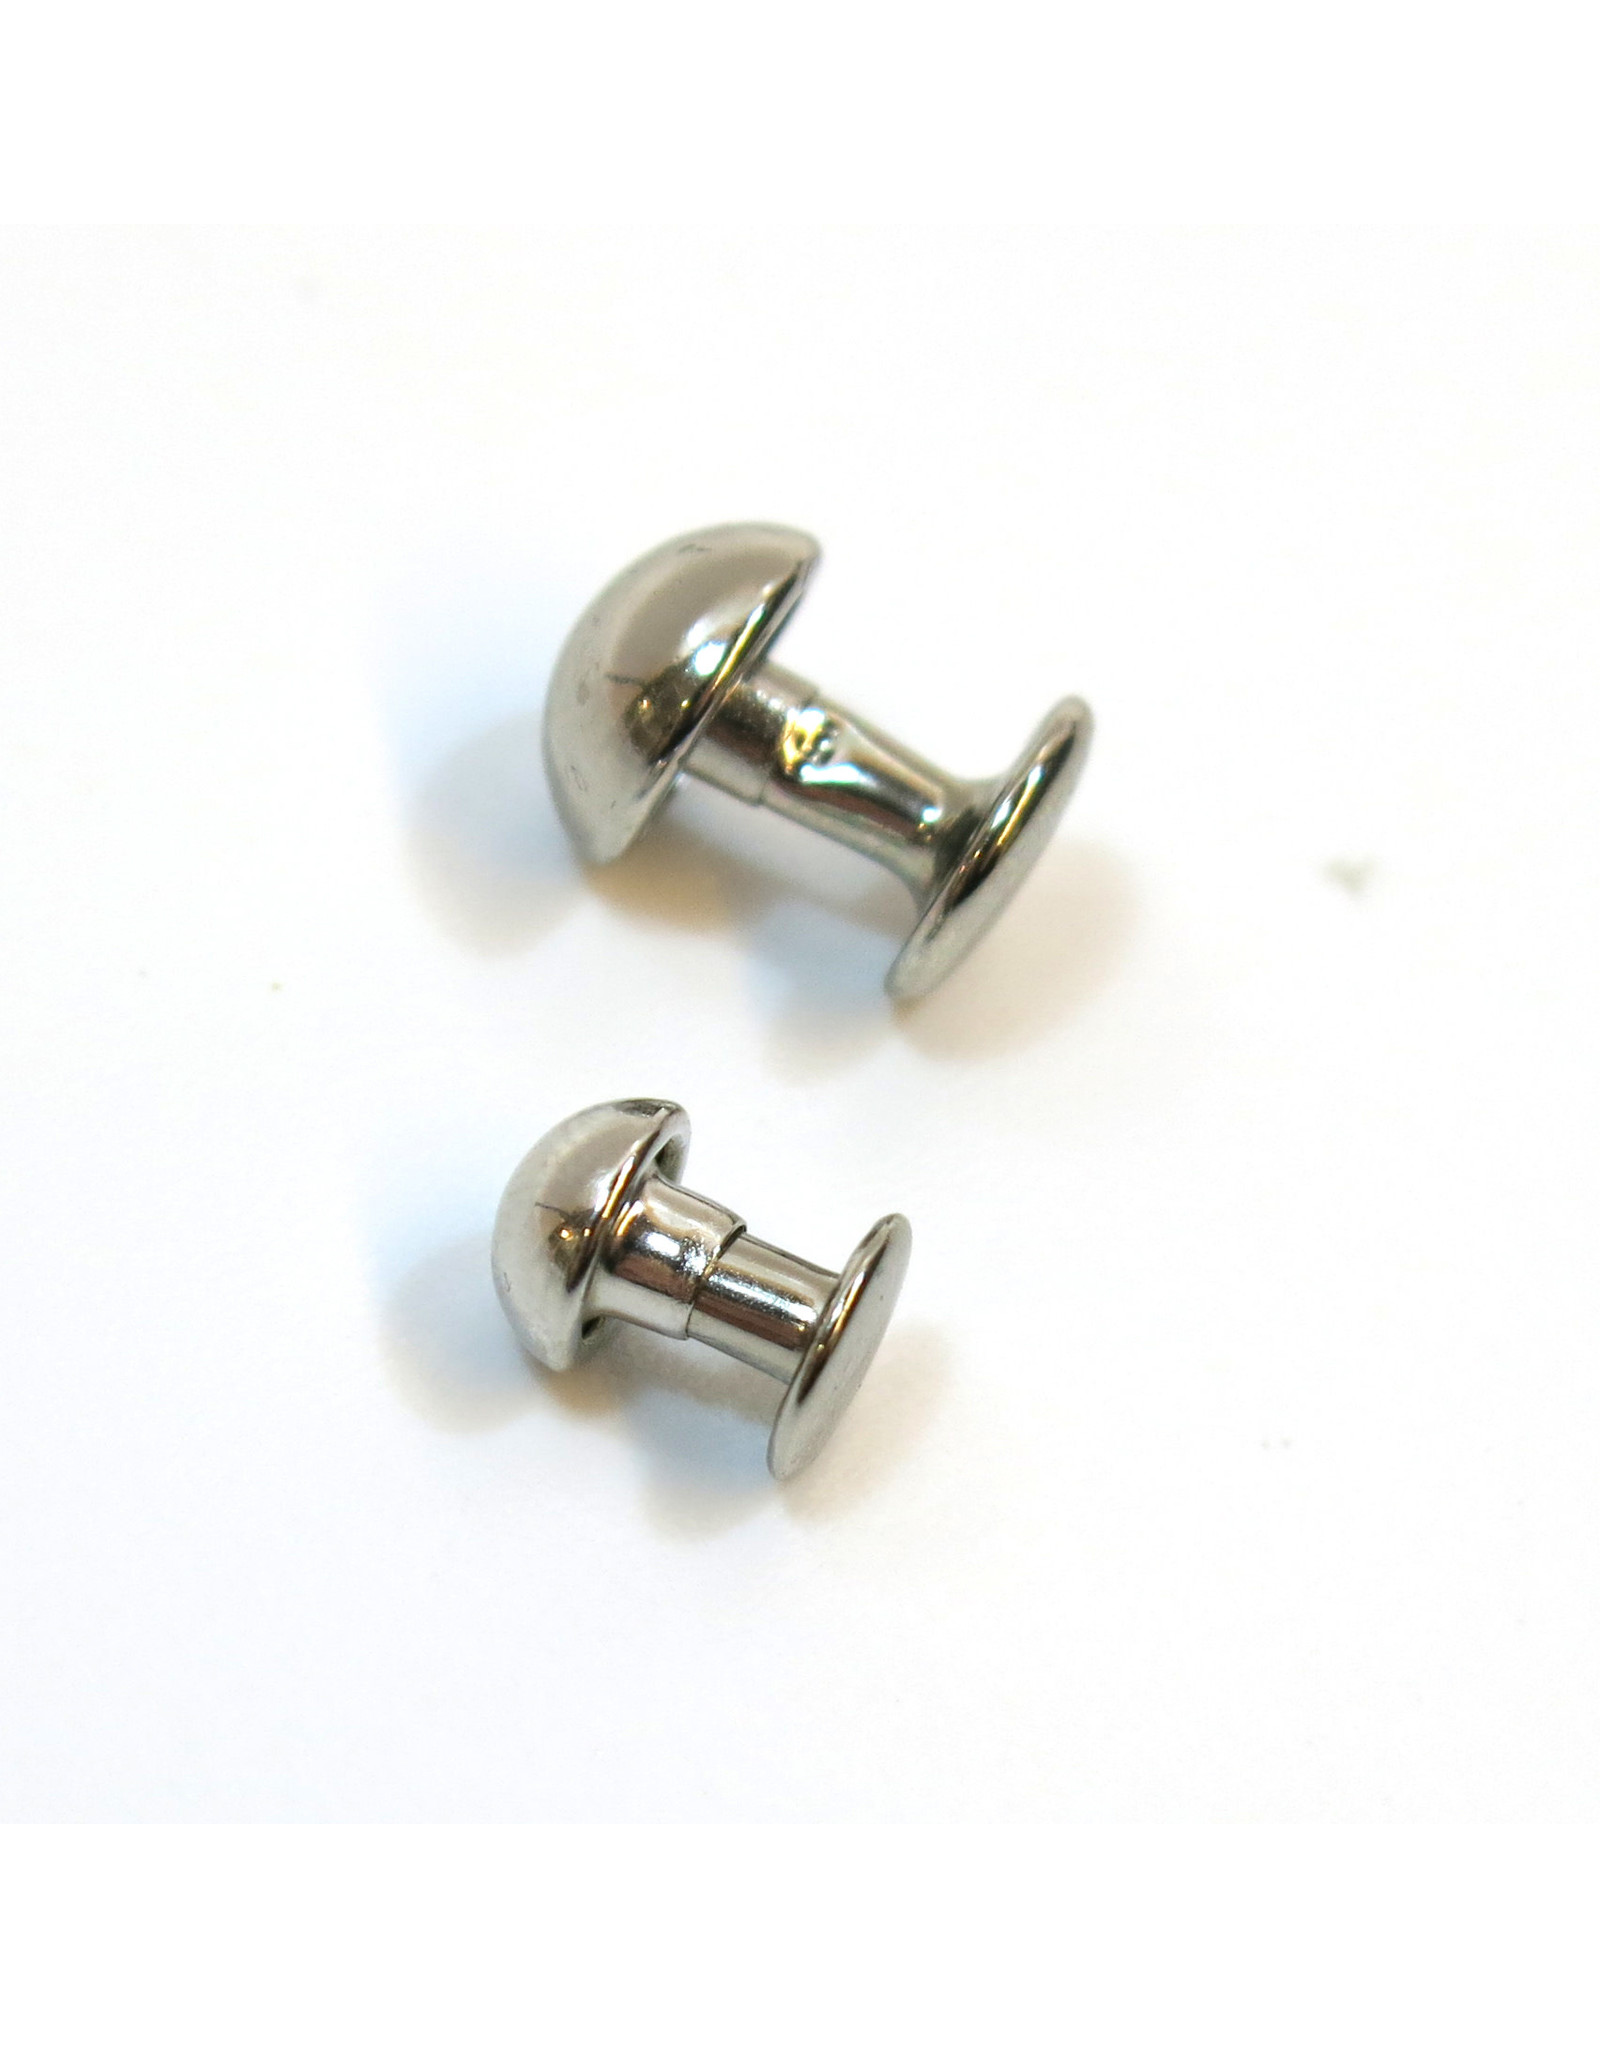 Domed rivets (nickel)